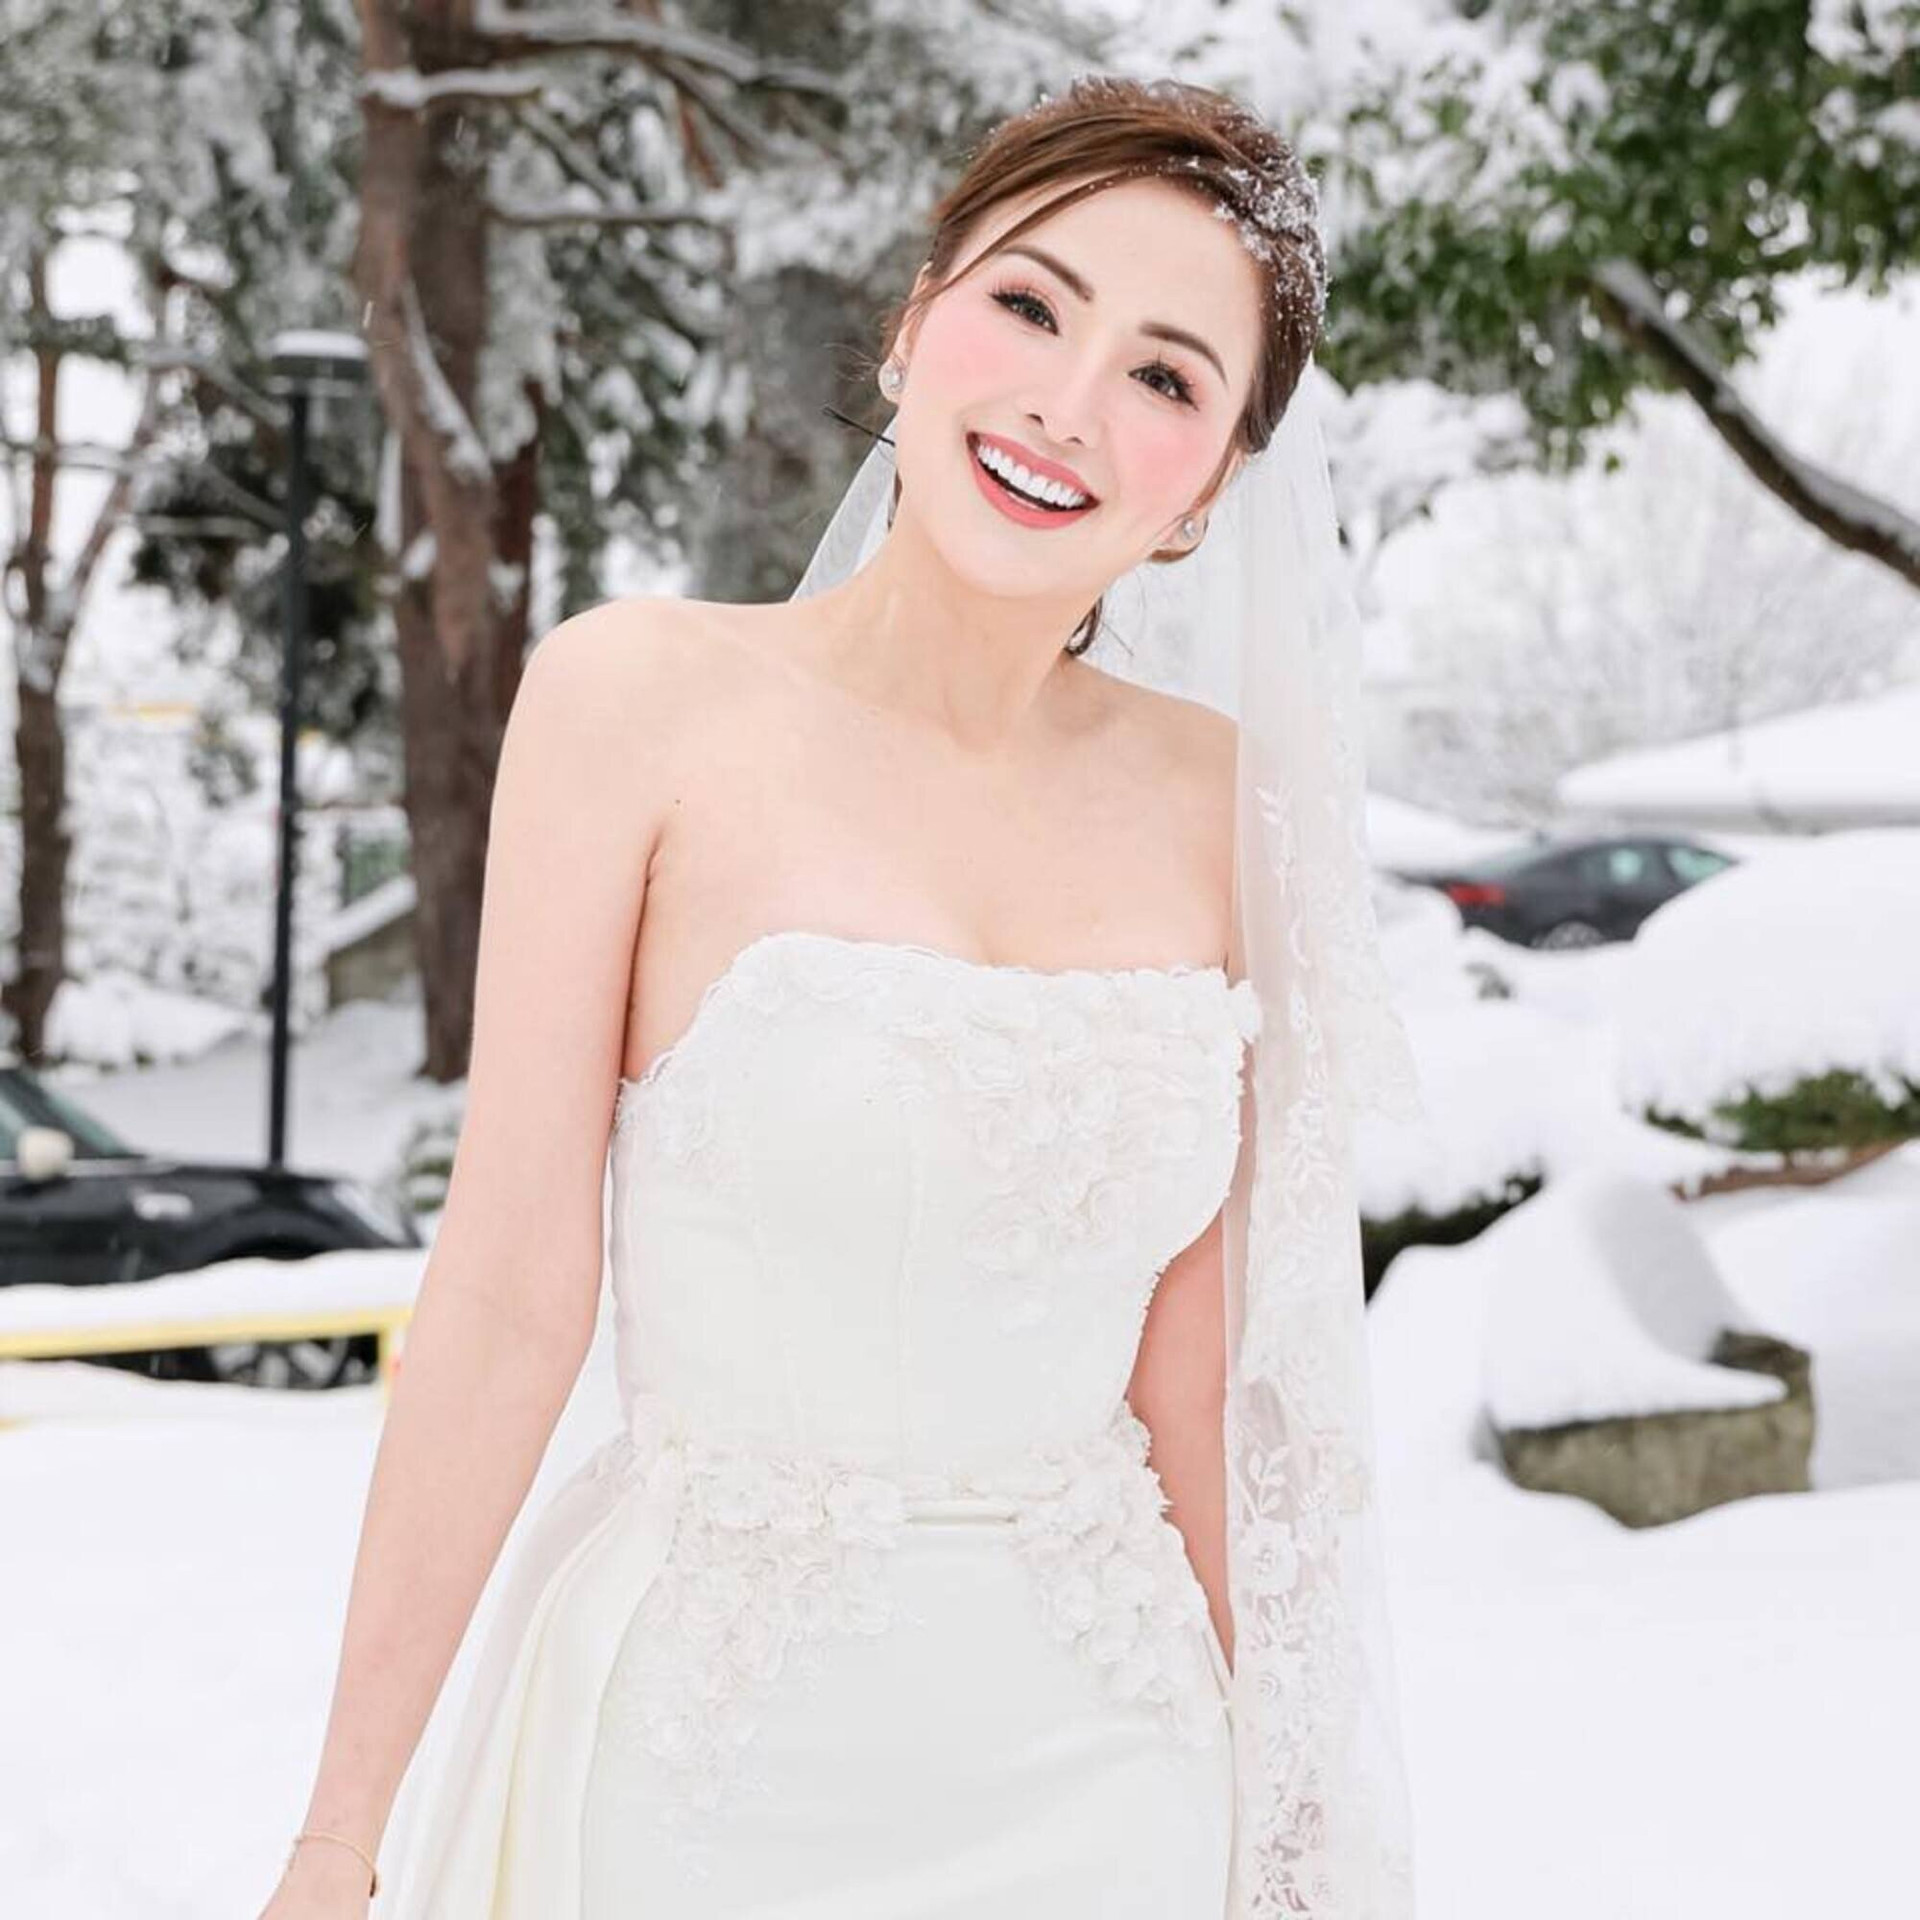 Hoa hậu Diễm Hương bí mật kết hôn lần thứ 3 tại Canada. Danh tính chú rể vẫn được giữ kín.